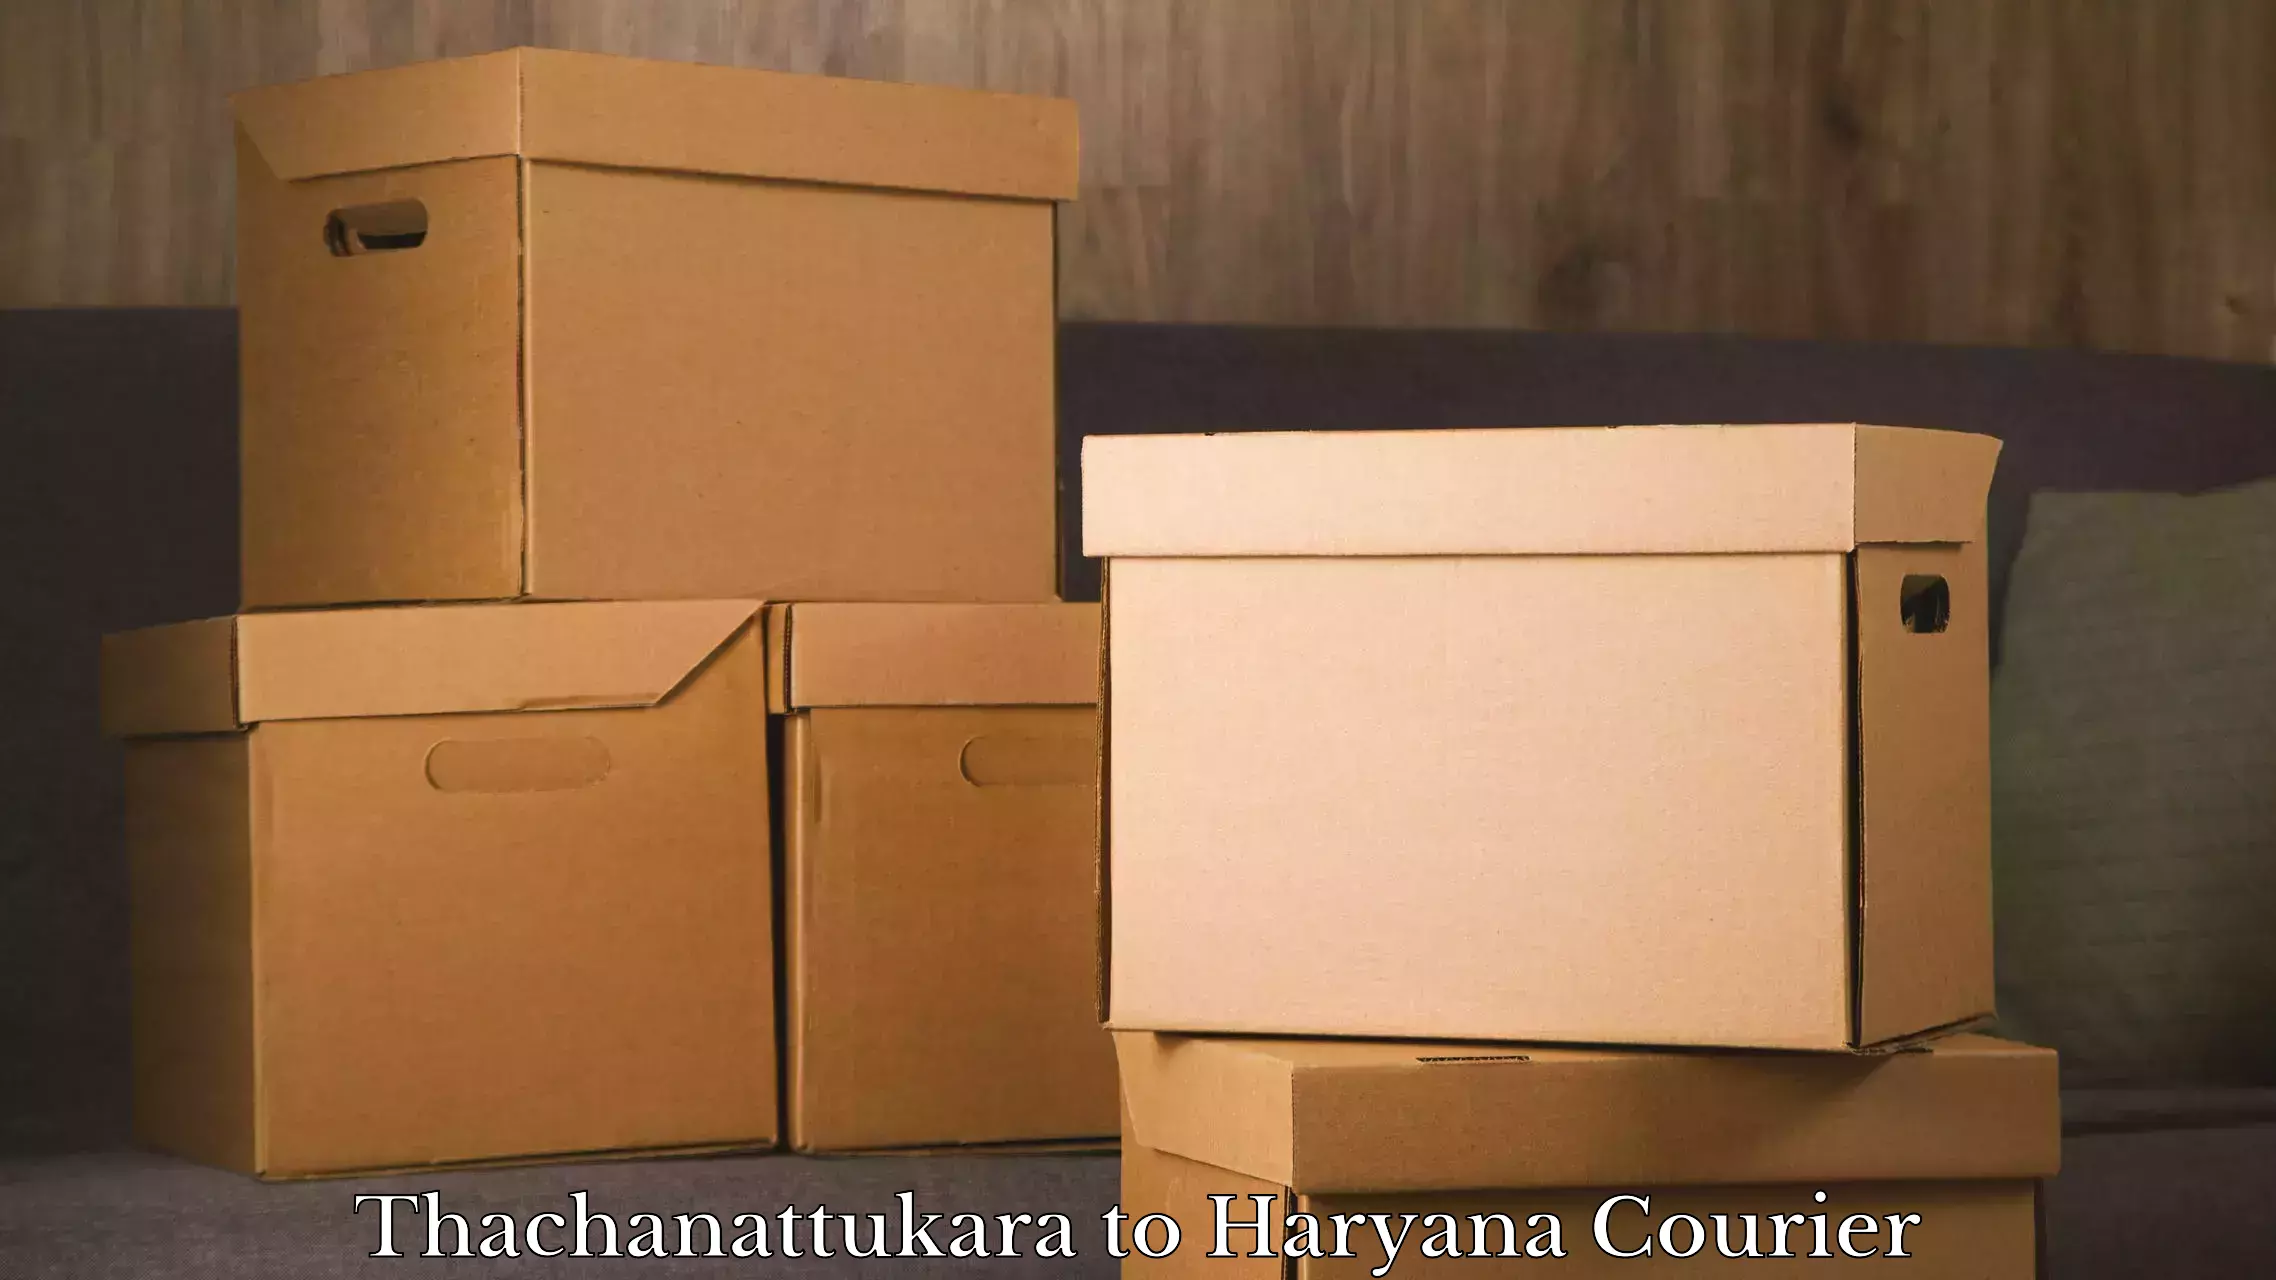 Urgent luggage shipment Thachanattukara to Chirya